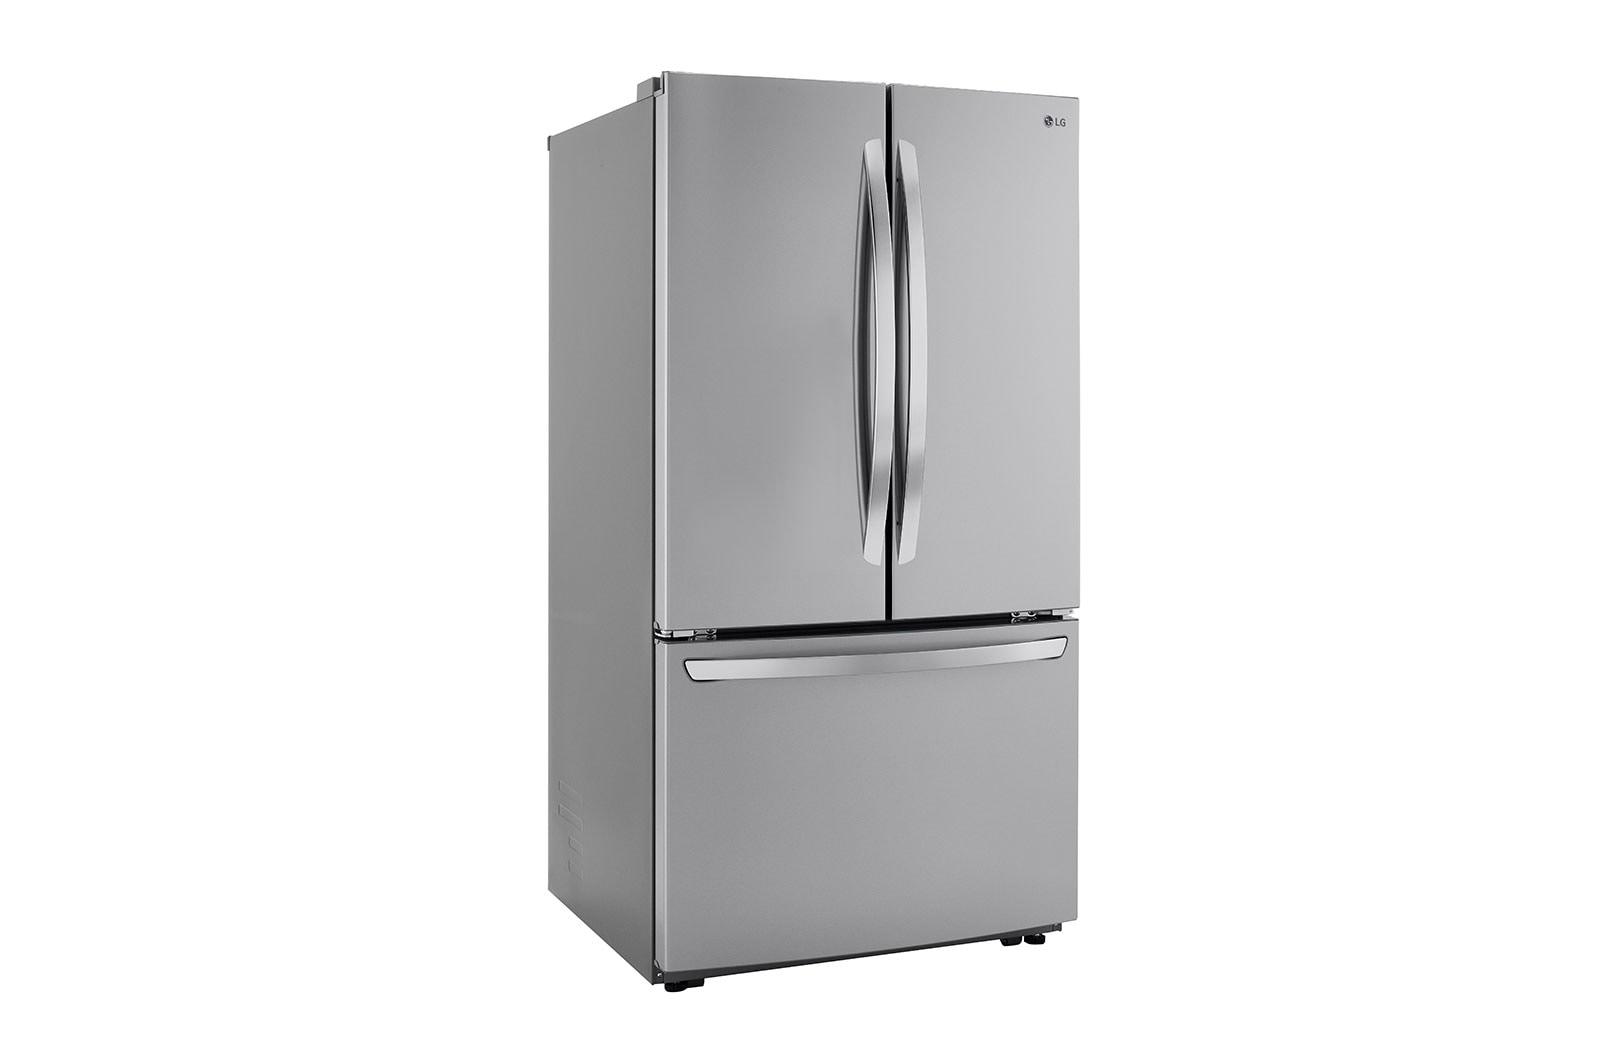 29 cu. ft. Smart French Door Refrigerator